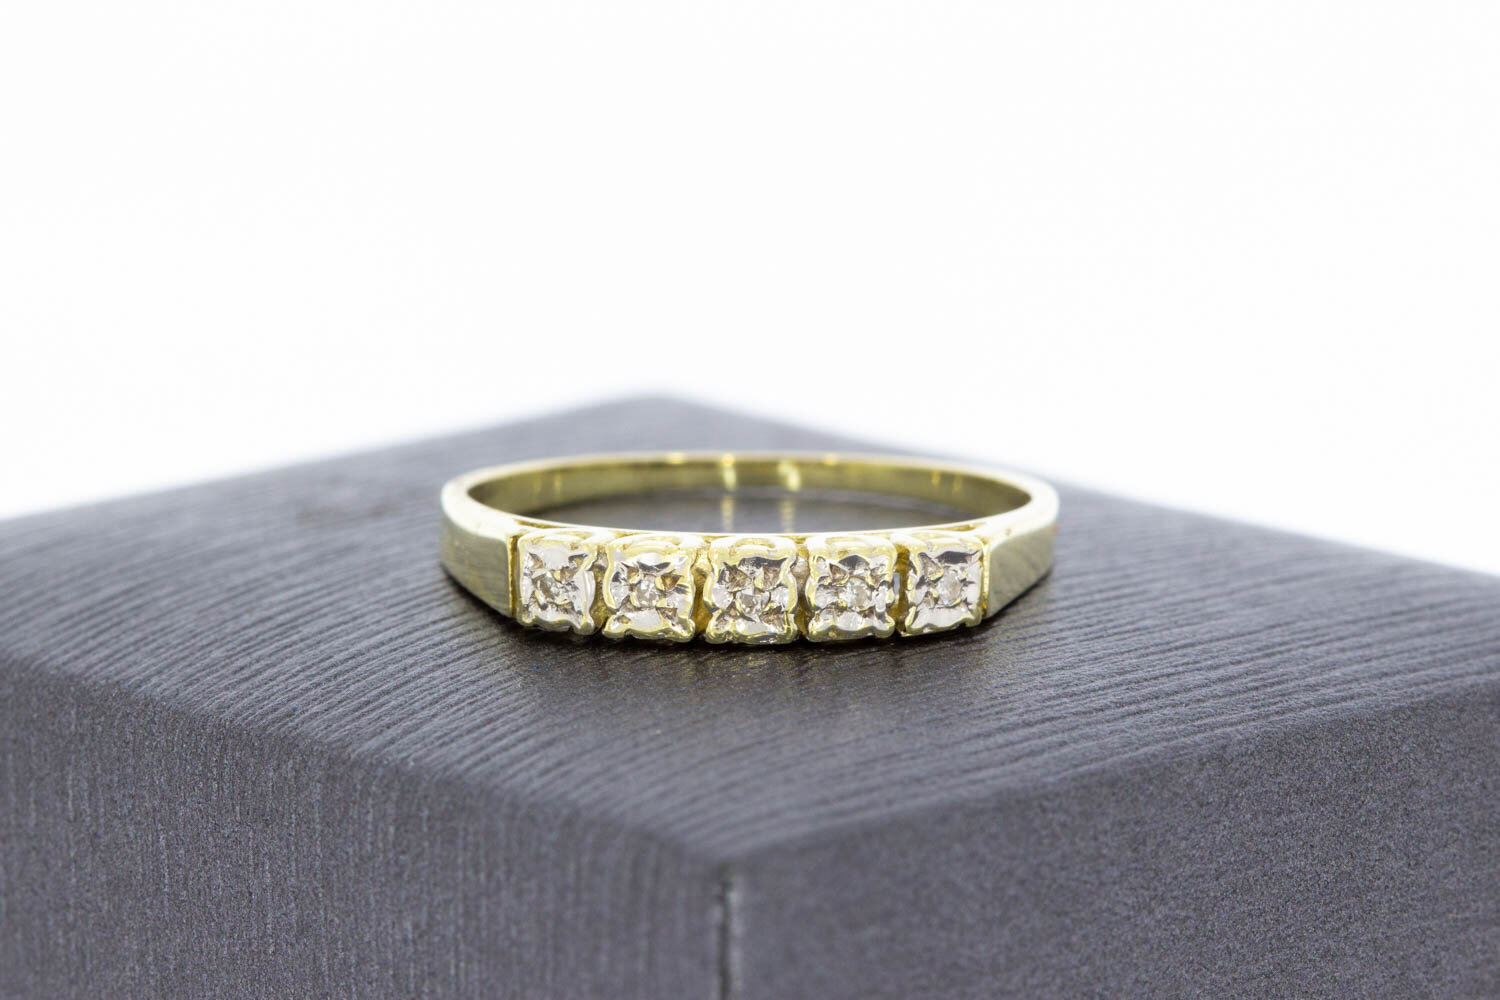 Goldene Vorsteckring mit Diamanten 14 Karat - 18,6 mm